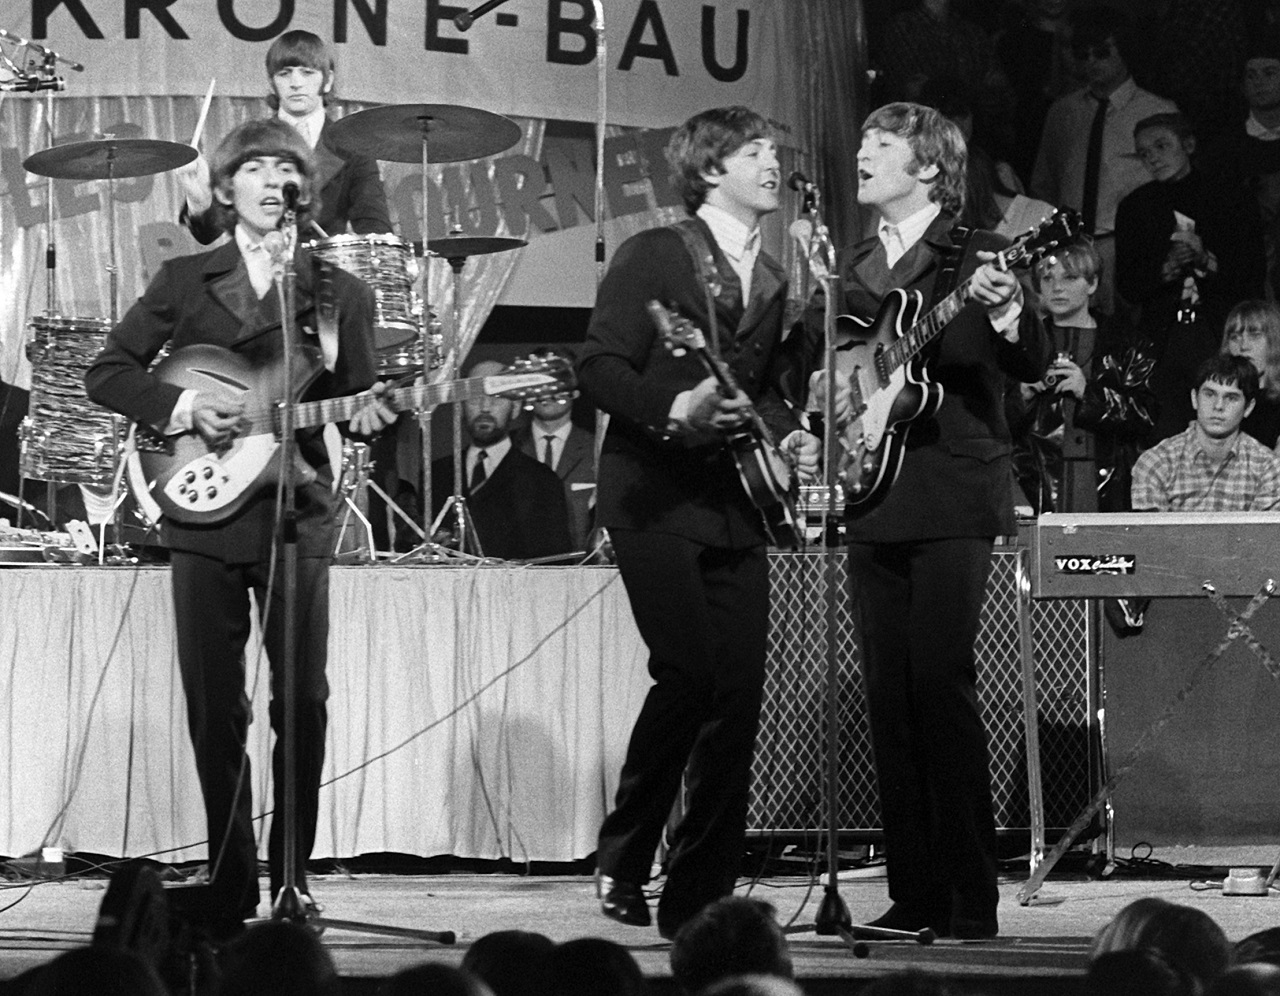 The Beatles sa skladbou “Now and Then”opäť zapísali do histórie